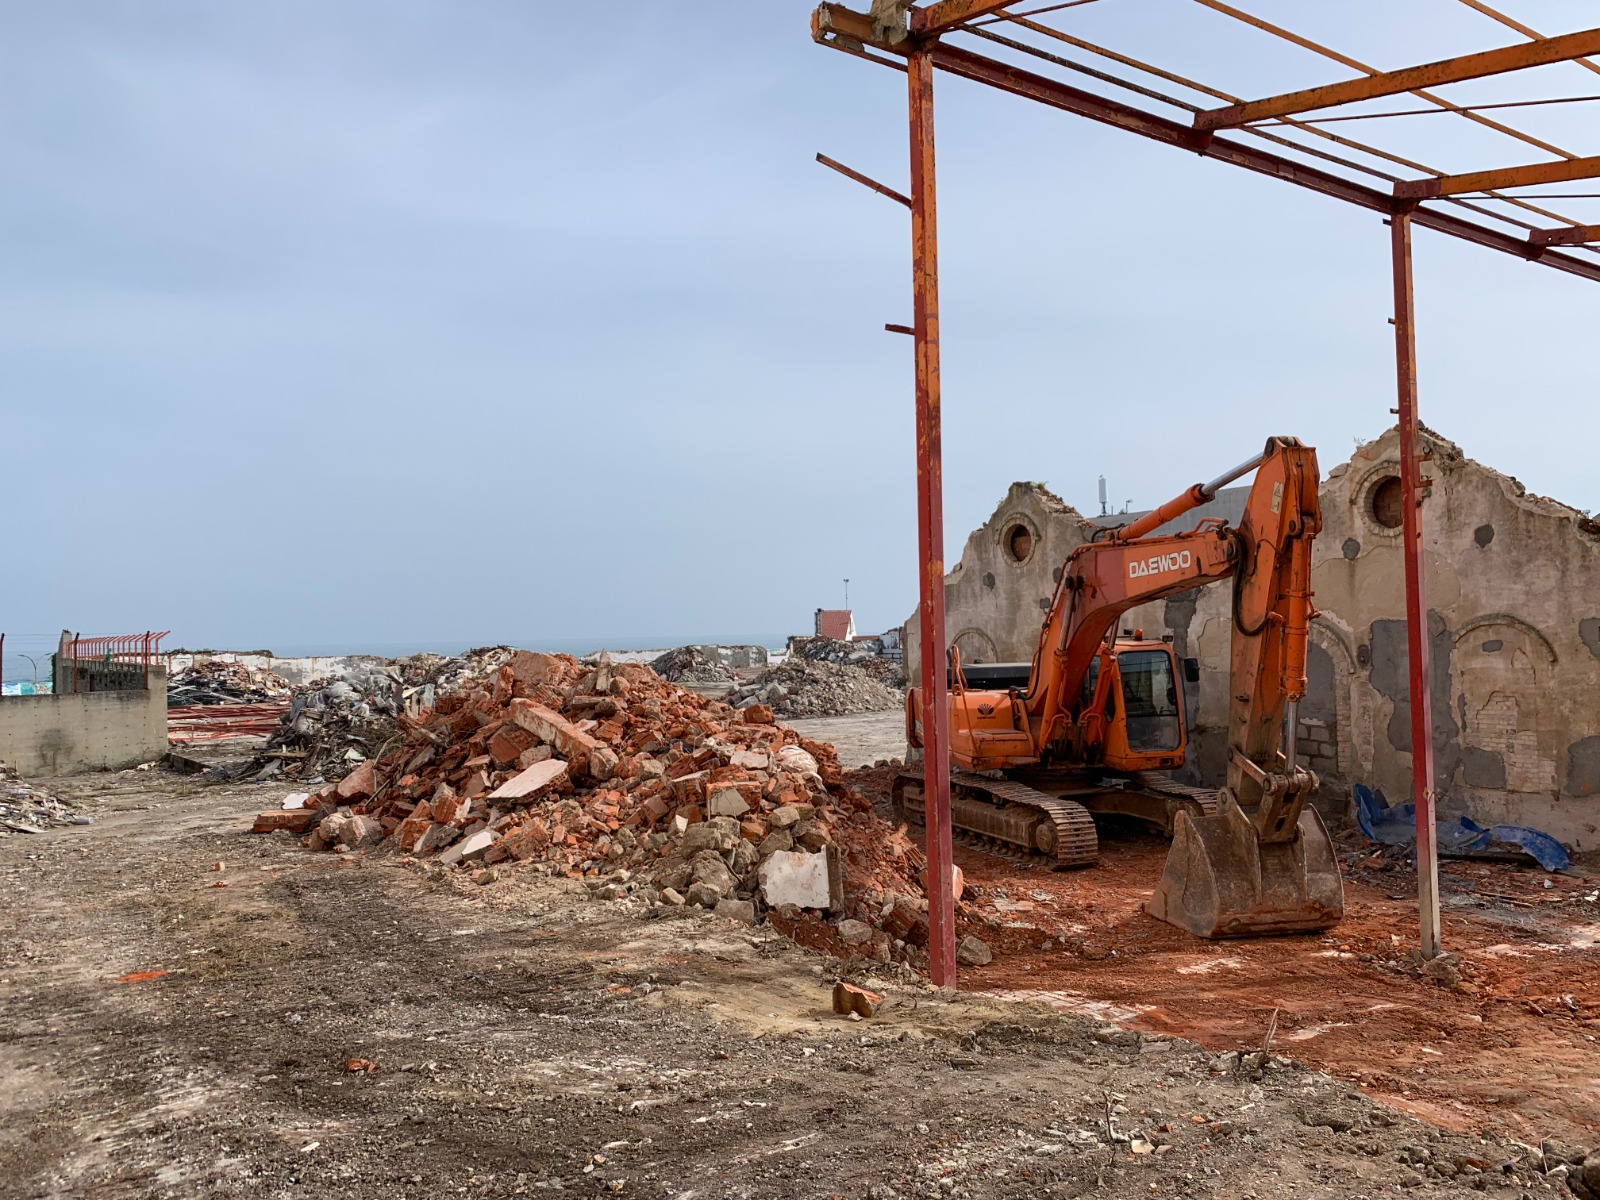  ARCODEGA denuncia enterramientos y la inexistencia de gestión de los RCDs generados en la demolición de la antigua fábrica “Gres Burela”